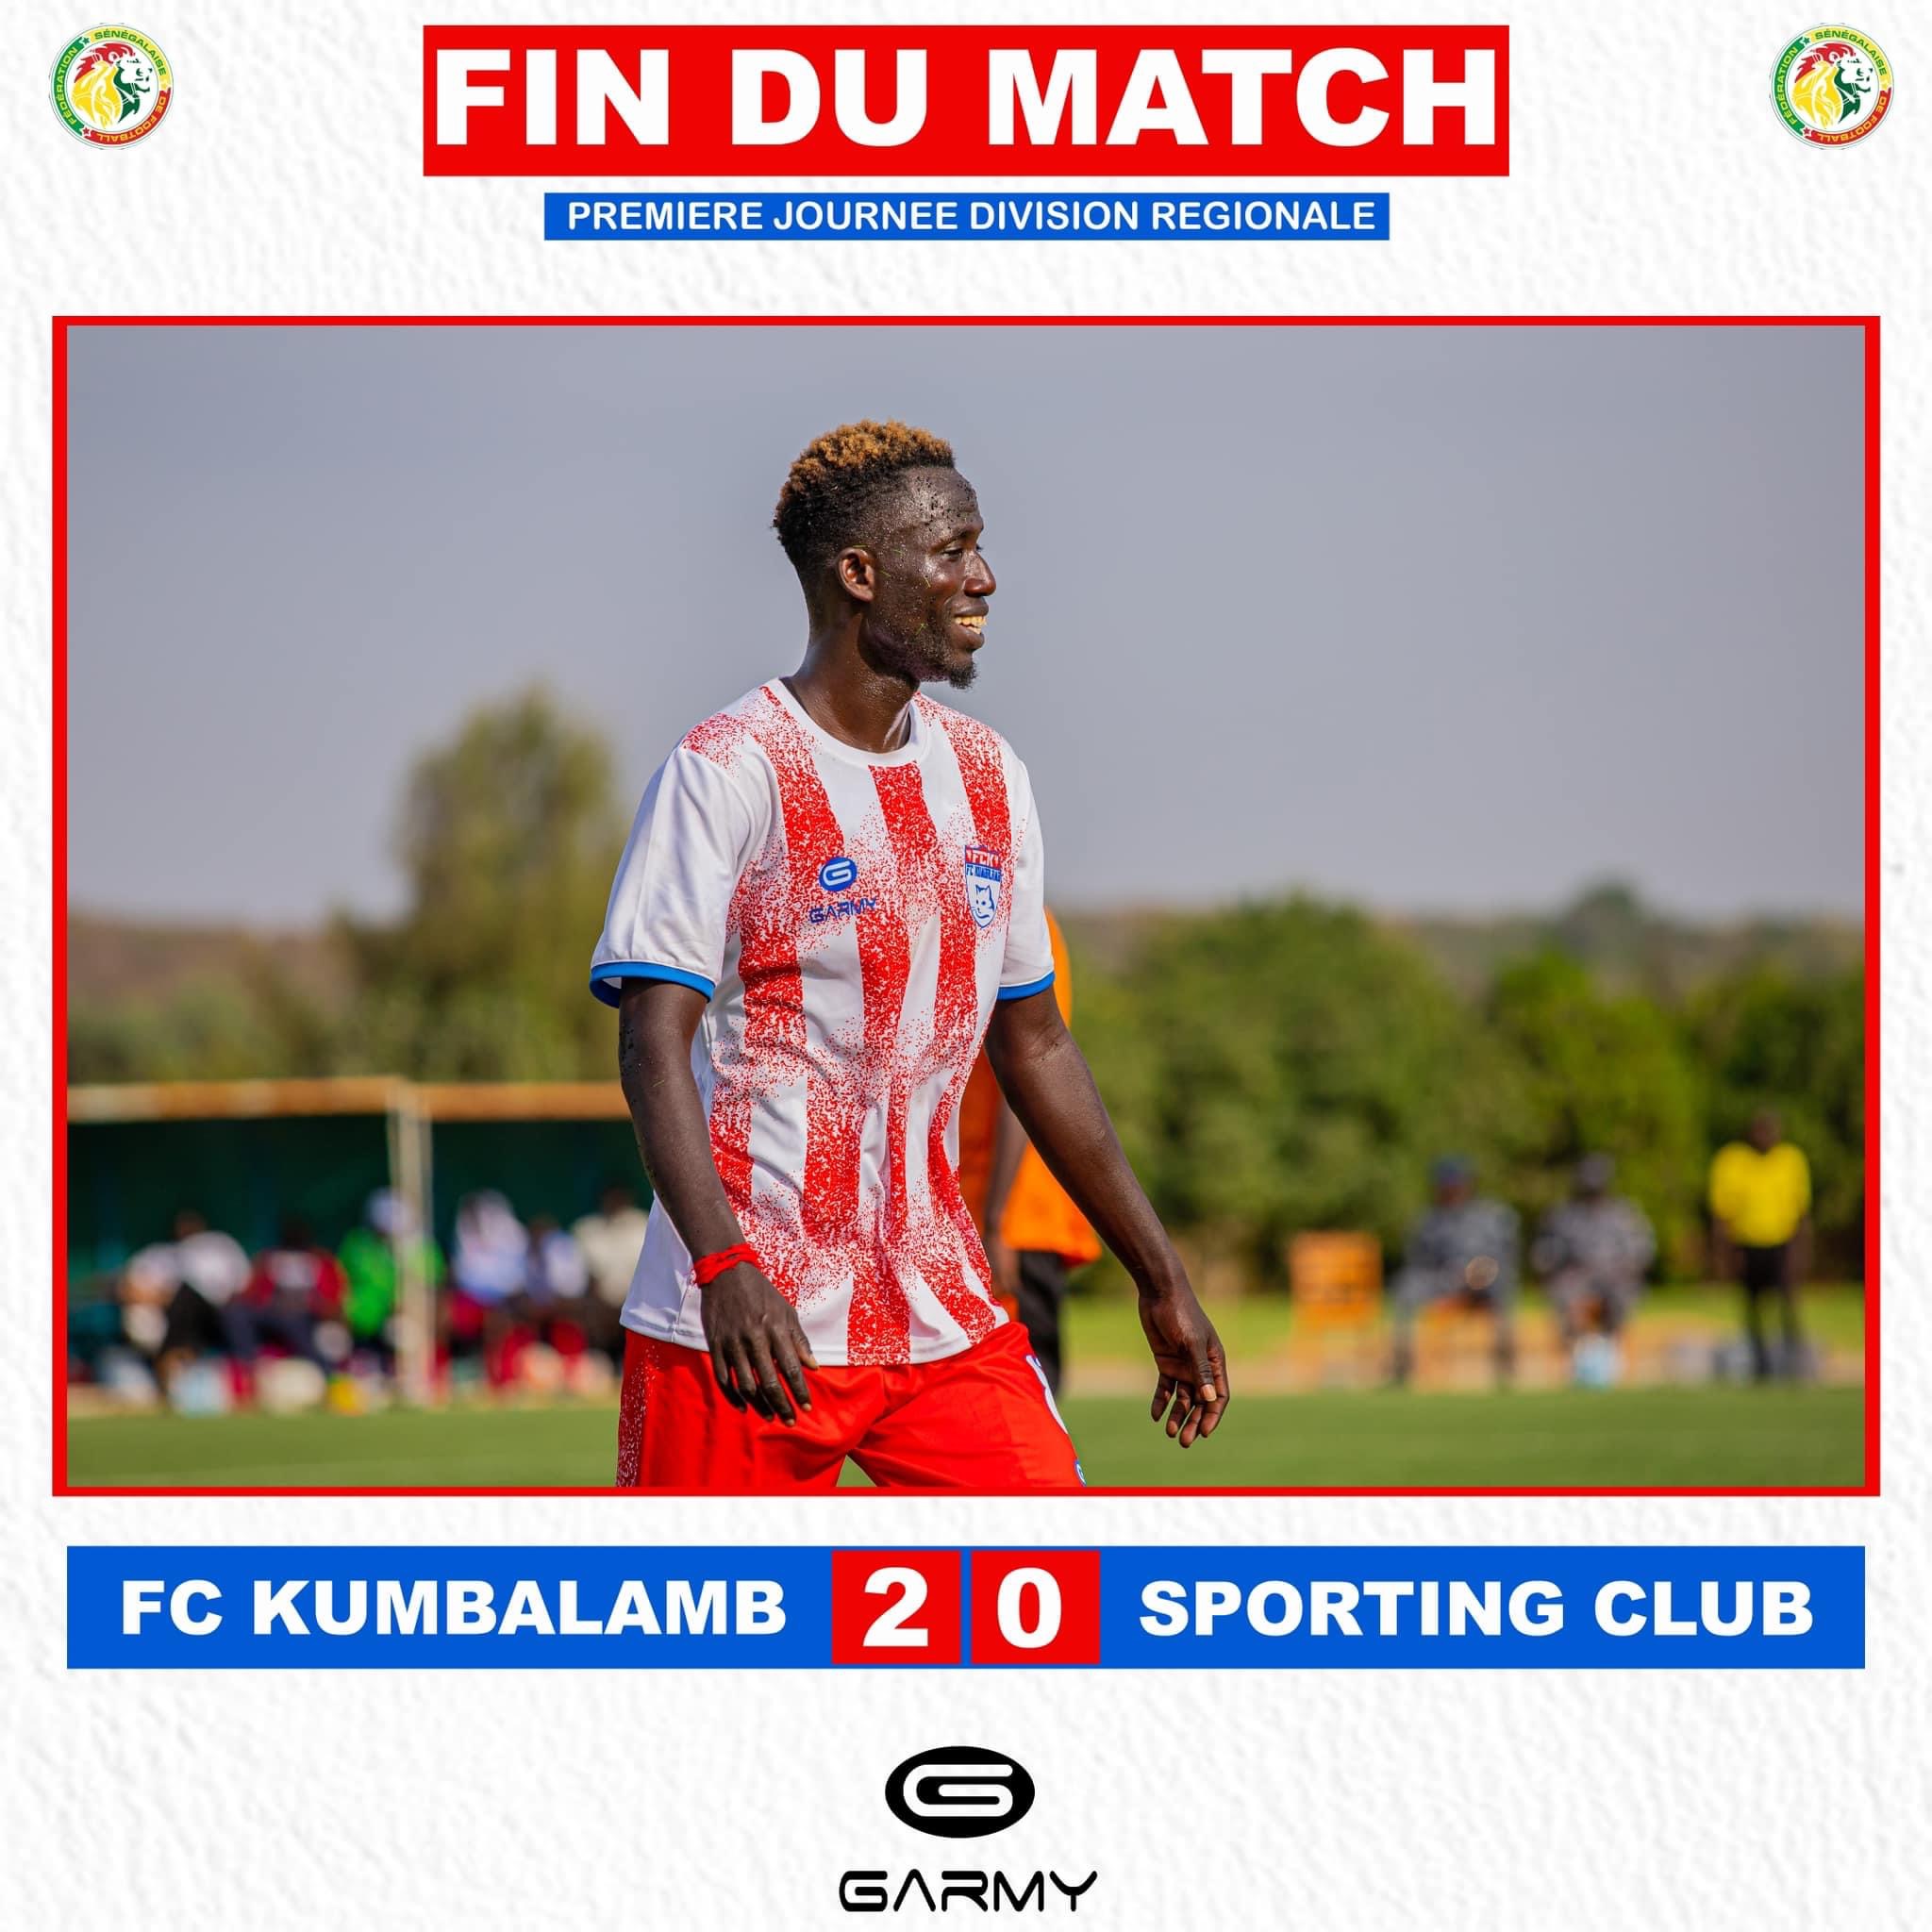 Première journée division régionale FC Kumbalamb domine le Sporting Club de 2-0